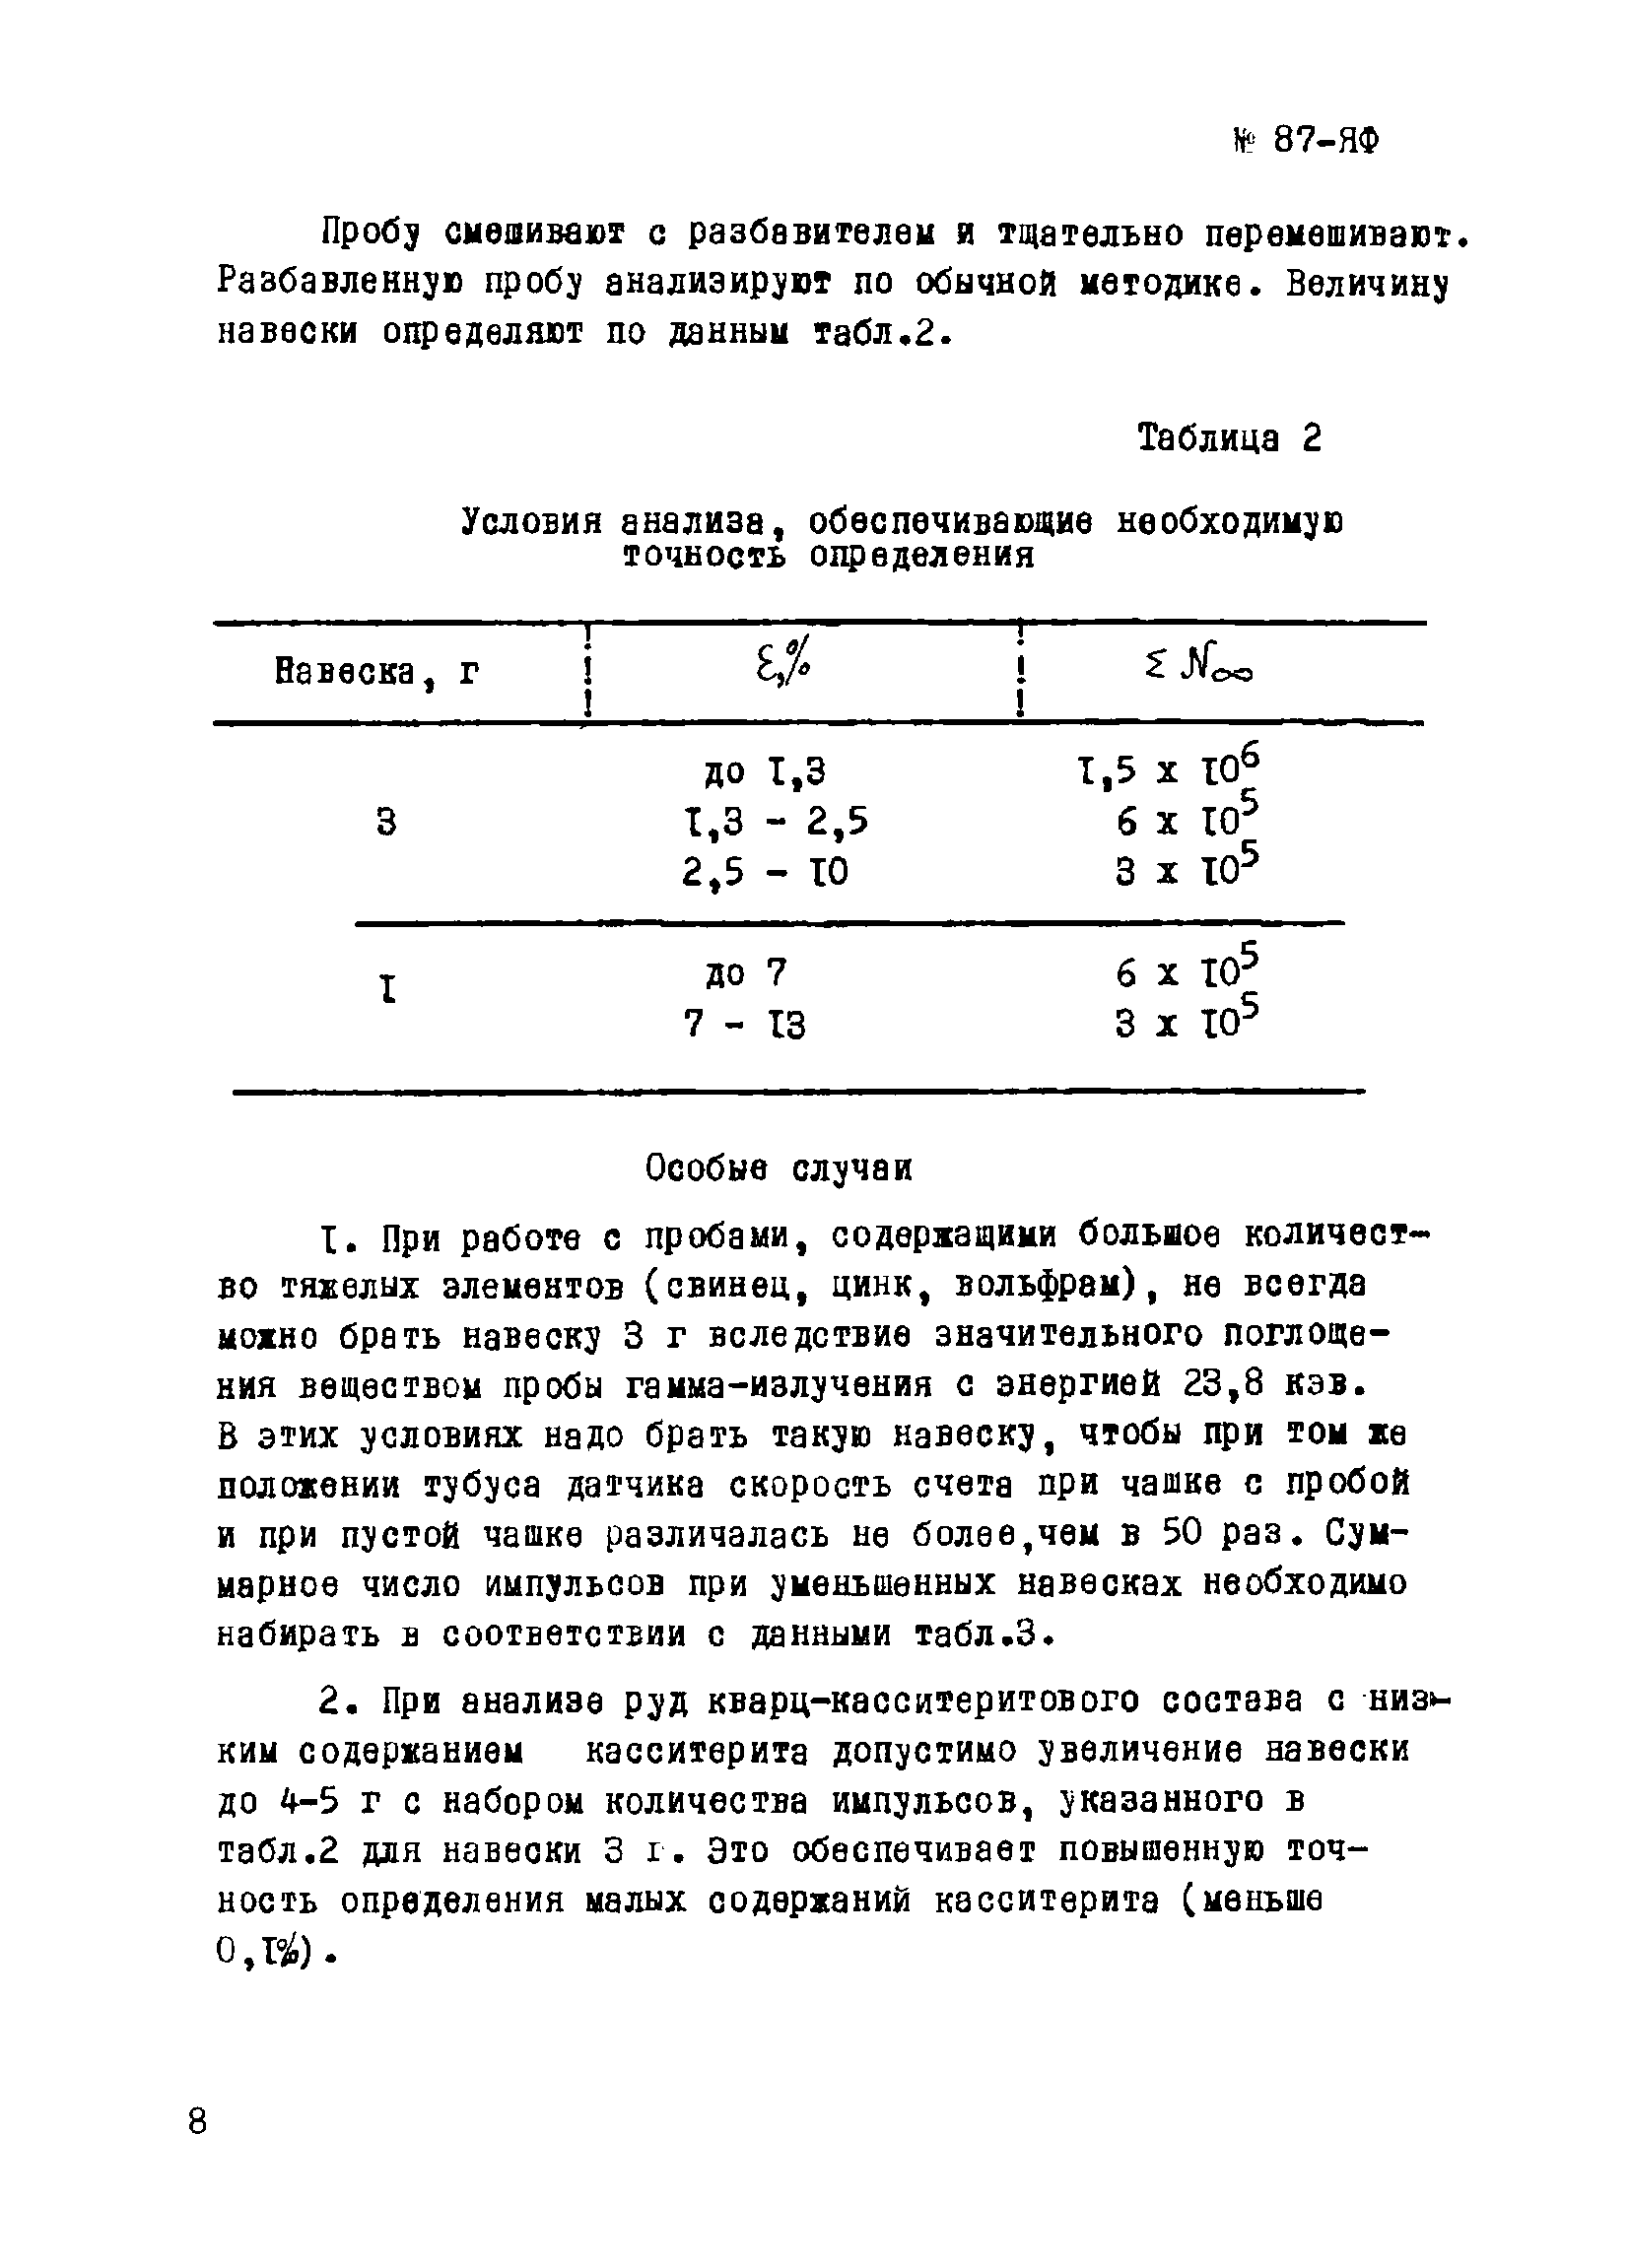 Инструкция НСАМ 87-ЯФ